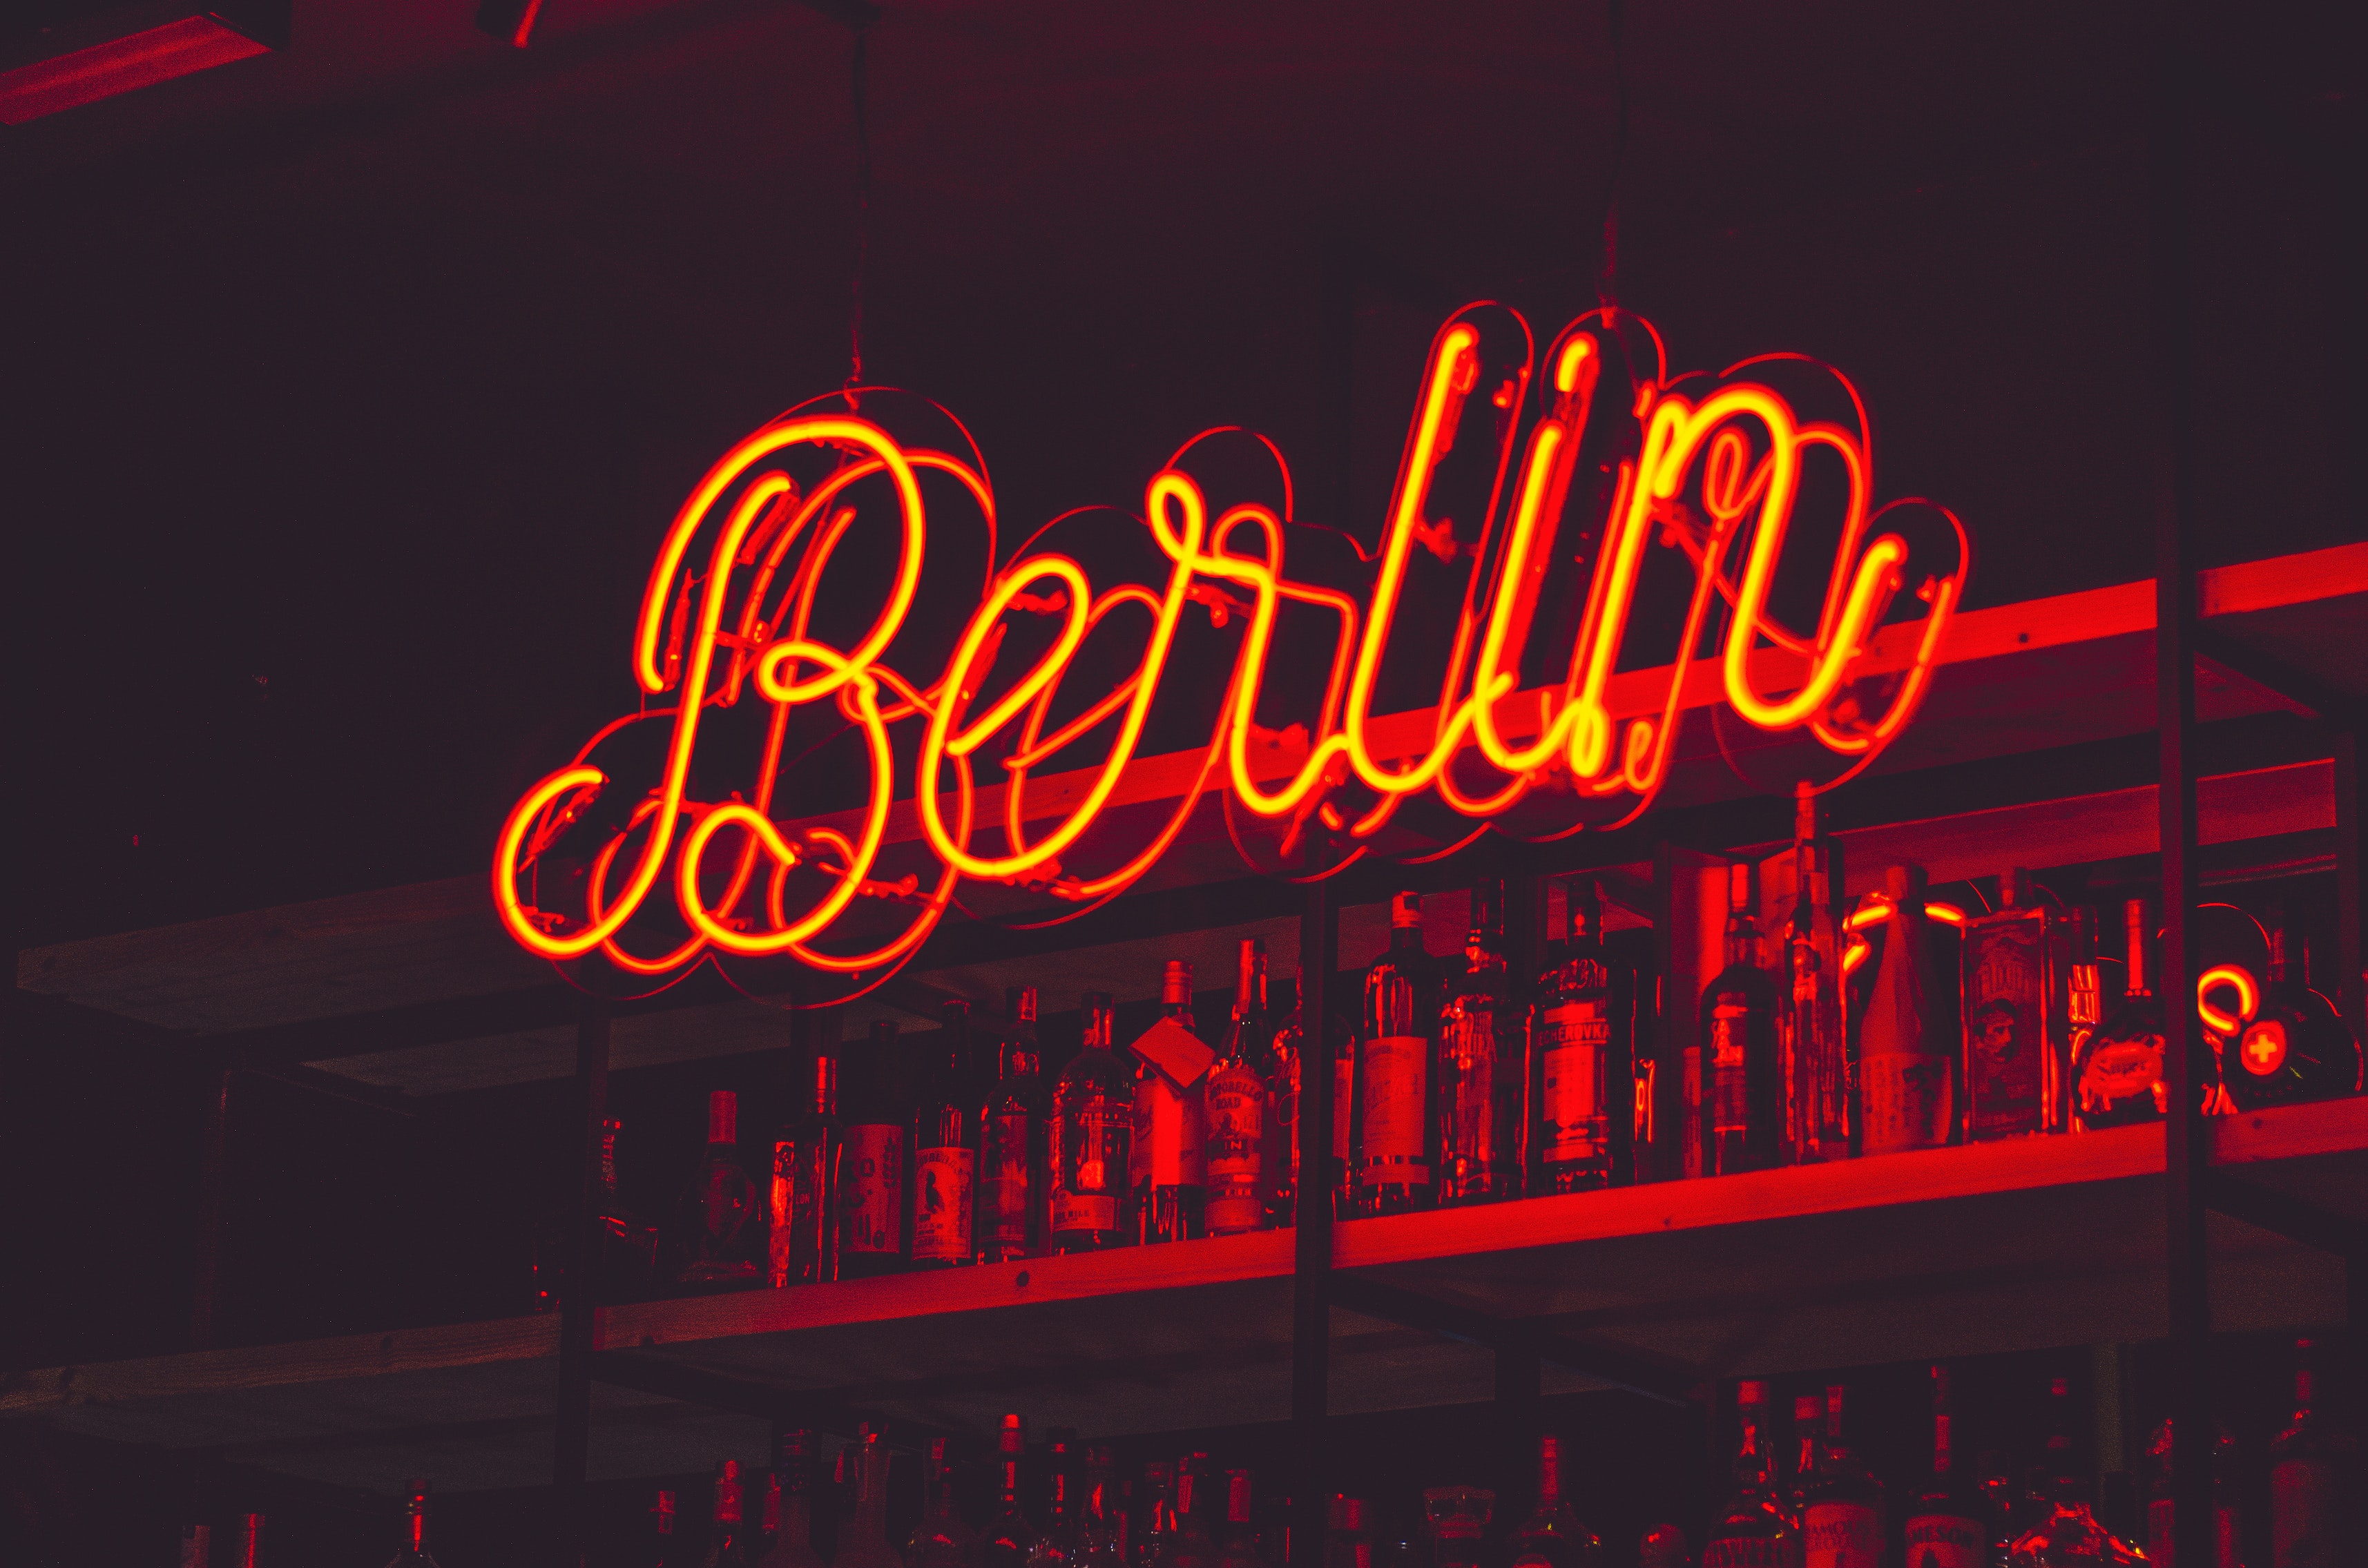  Zuge von Berlin-Warschau: Berlin Bar im Neonlicht 